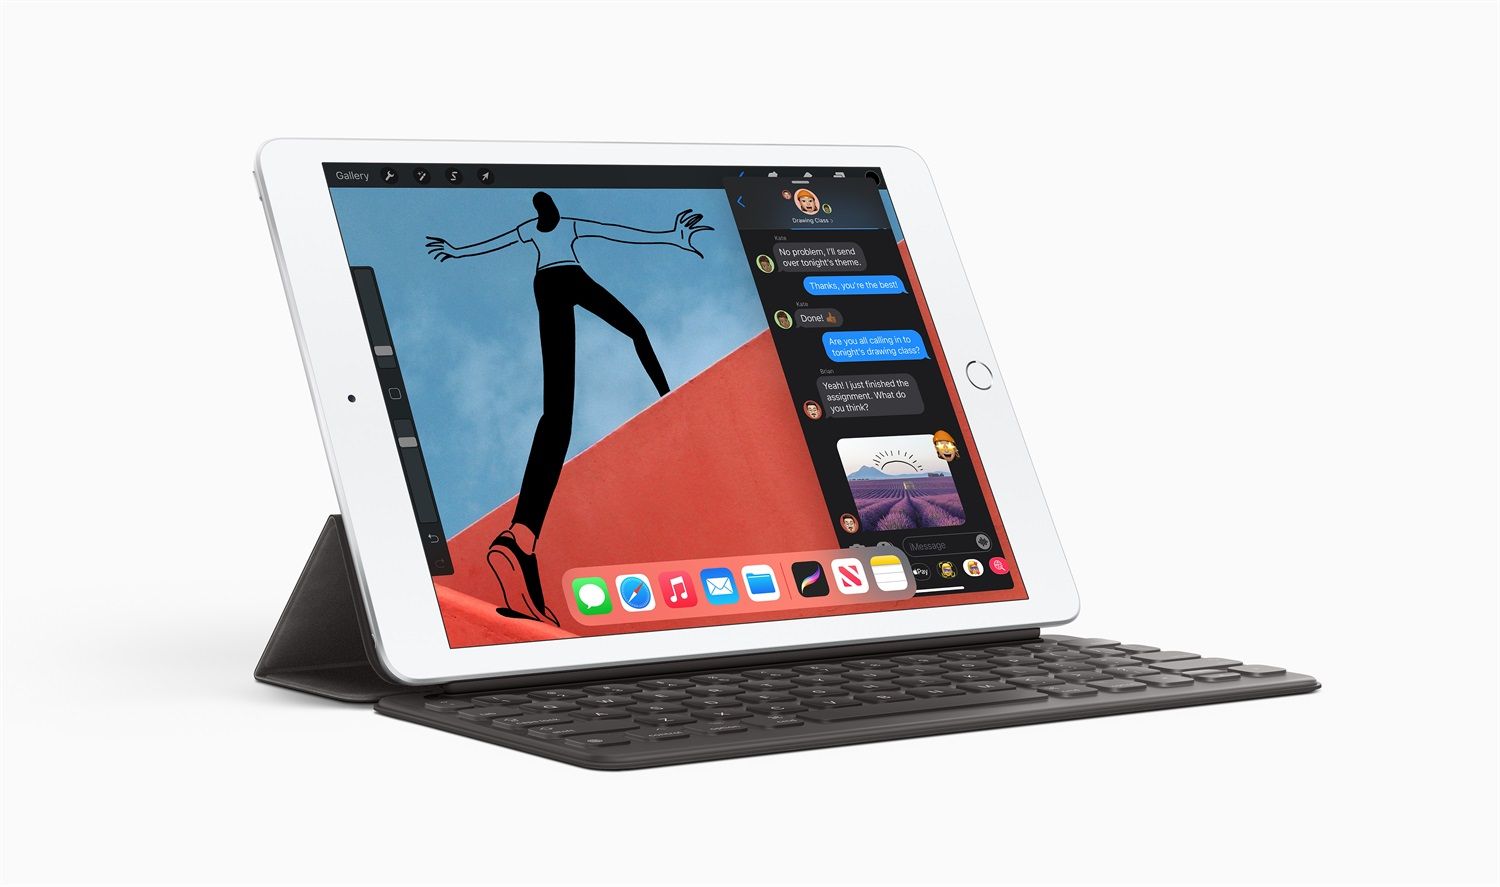 Accessori Tablet: Prezzi e Offerte accessori iPad Online - Overly